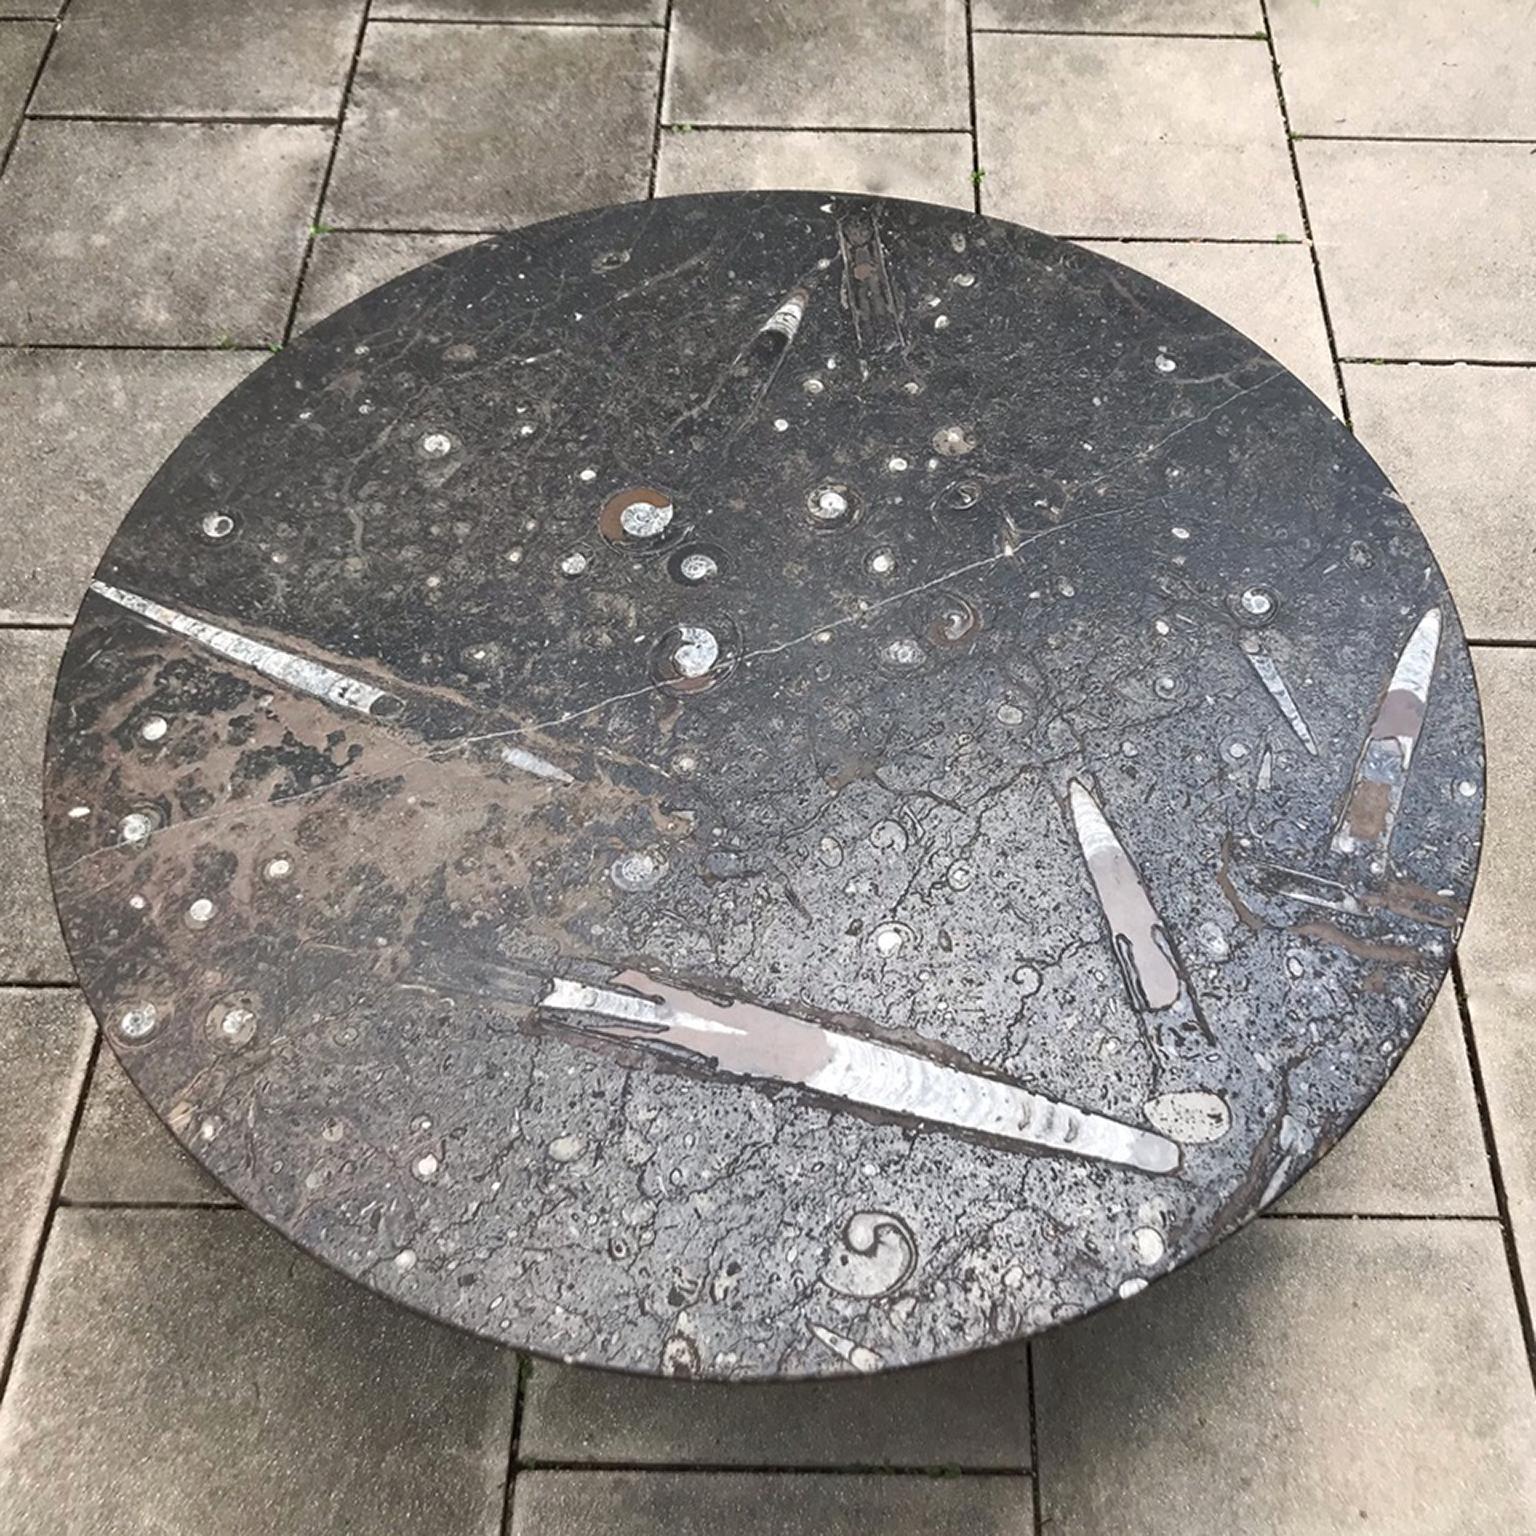 Le célèbre artiste allemand Heinz Lilienthal a conçu cette table basse accrocheuse en 1970. La caractéristique unique de cette table est le grand plateau rond en pierre avec des incrustations d'ammonites et de fossiles. Cela crée un aspect unique